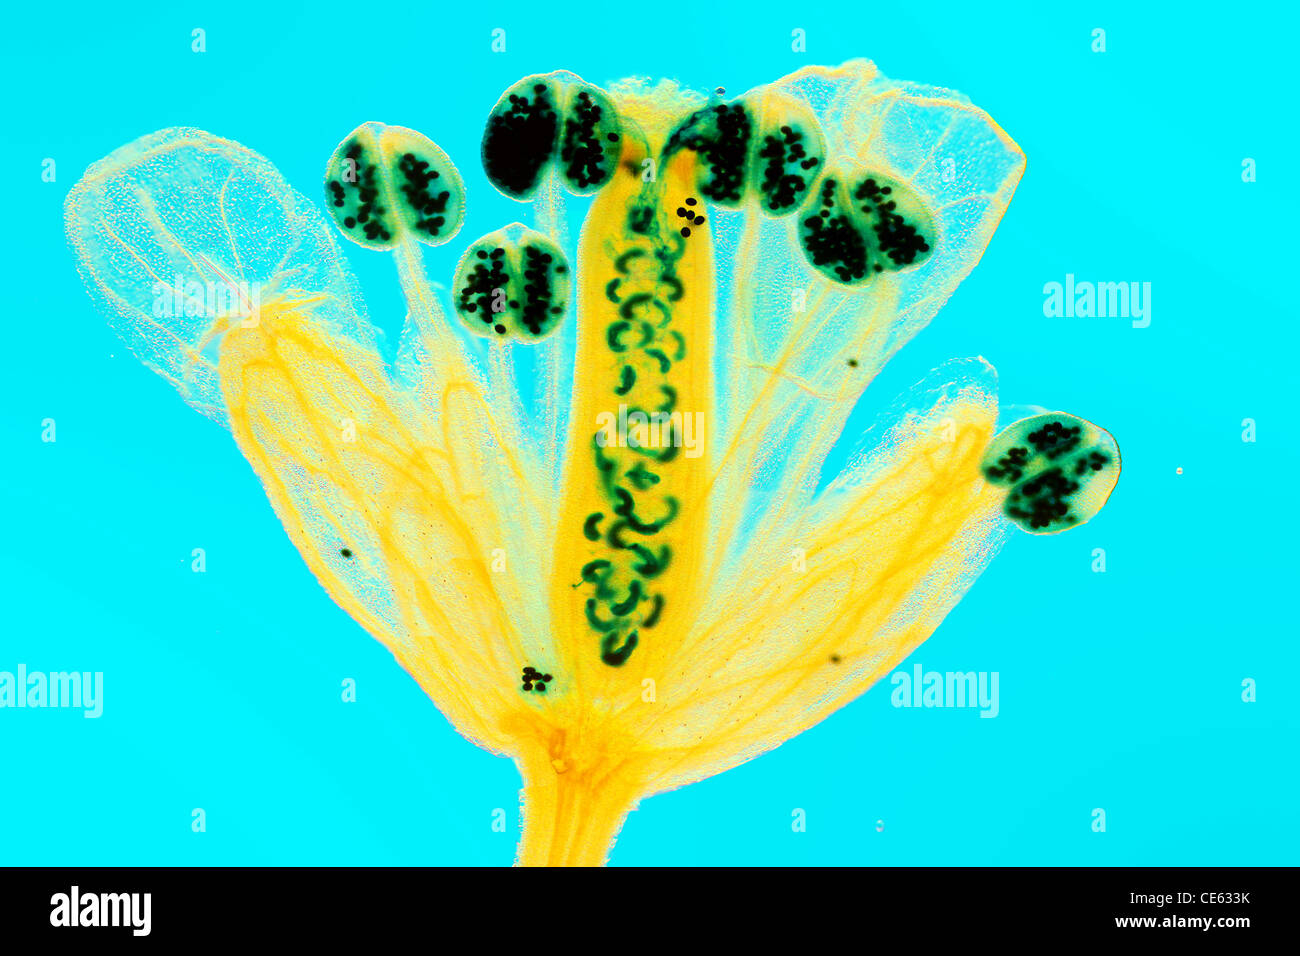 Self-fertilizzazione in Arabidopsis thaliana fiore. Foto Stock